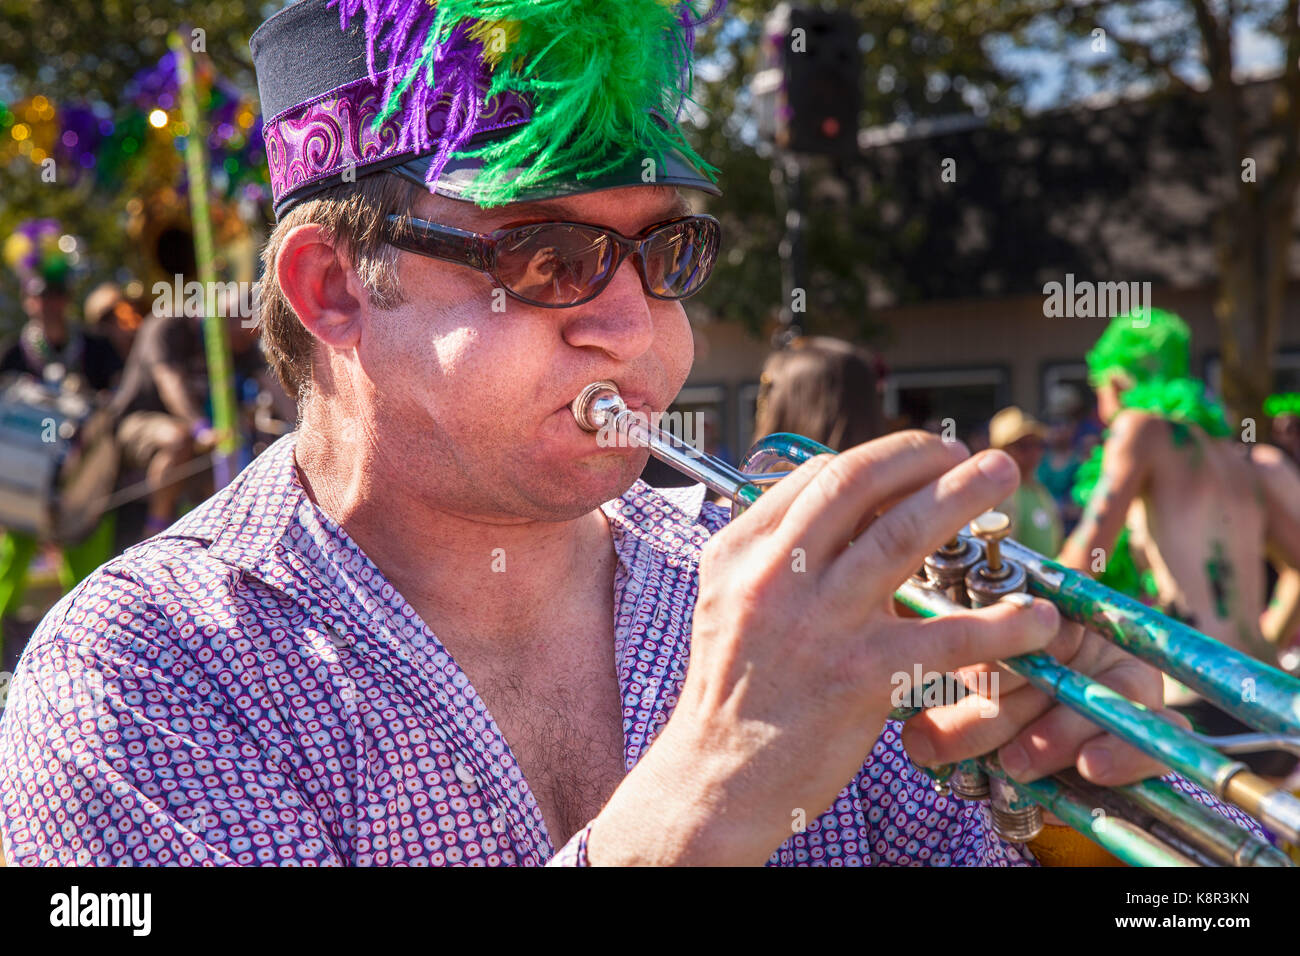 Seattle, WA - giugno 22, 2013: un musicista non identificato con un cappello piumato e occhiali da sole suona la tromba come parte di honkfest in Fremont estate Foto Stock